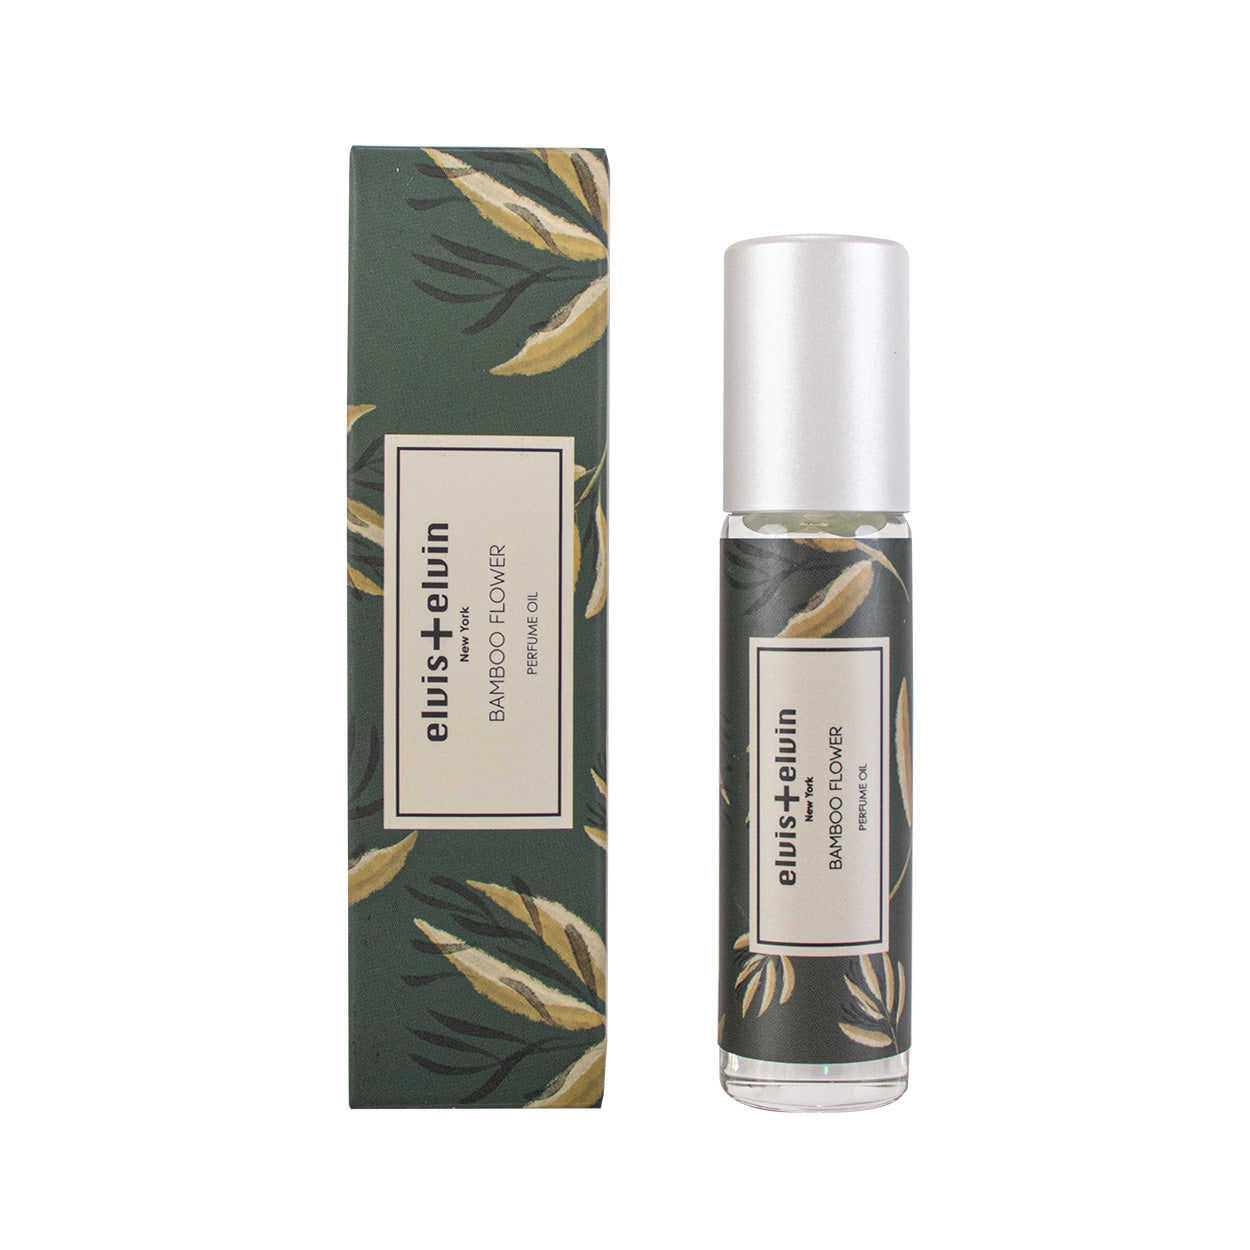  Perfume oil - Bamboo Flower by elvis+elvin elvis+elvin Perfumarie